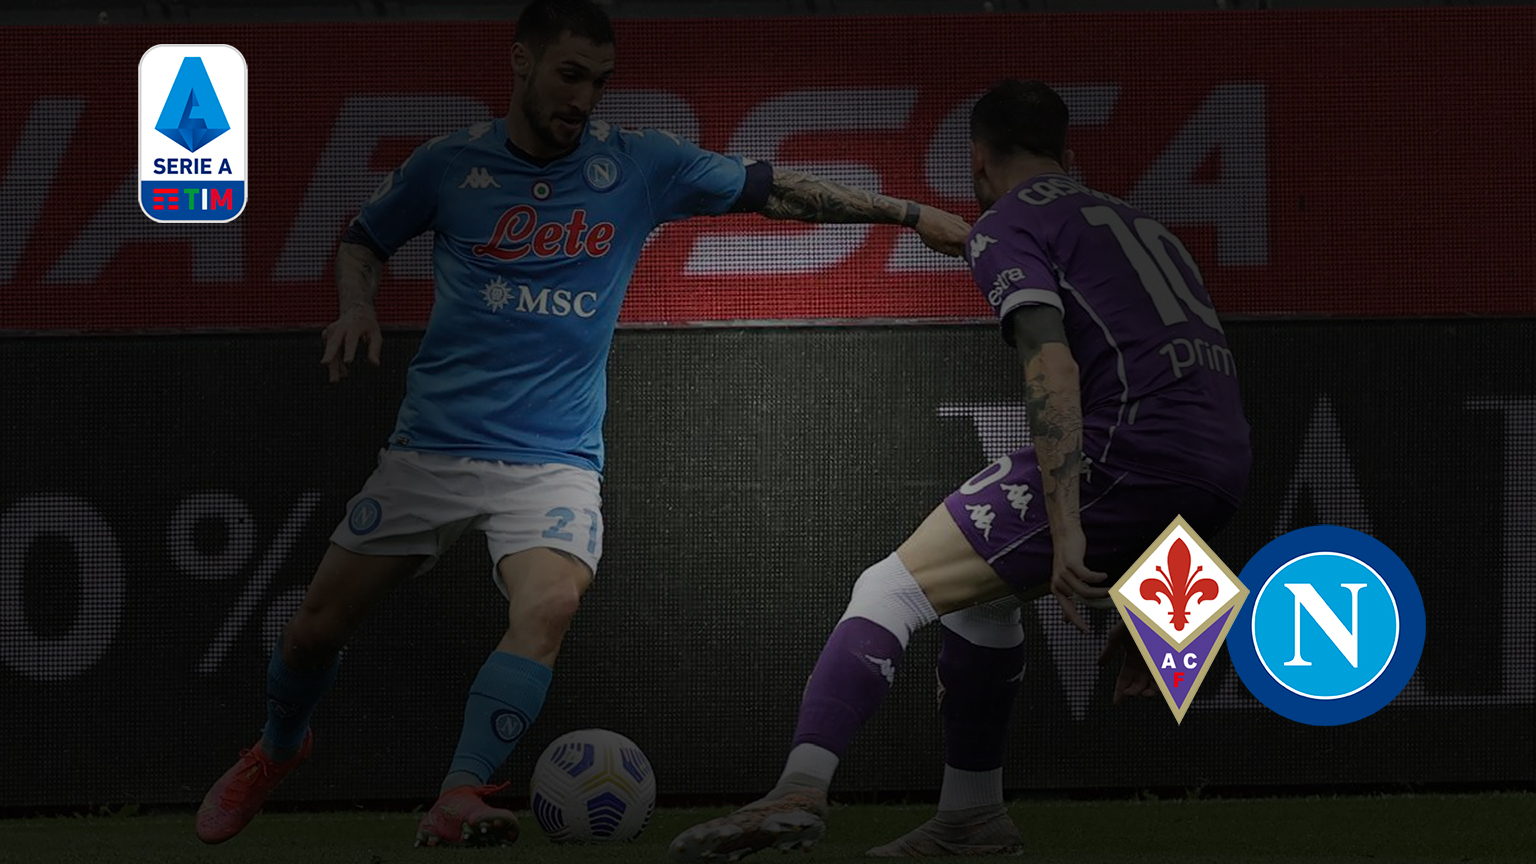 Fiorentina Napoli Odds tempat untuk melihat di TV Odds prediksi formasi Serie A Taruhan olahraga sepak bola Italia Stadio artemio franchi sscnapoli Fiorentina-Napoli